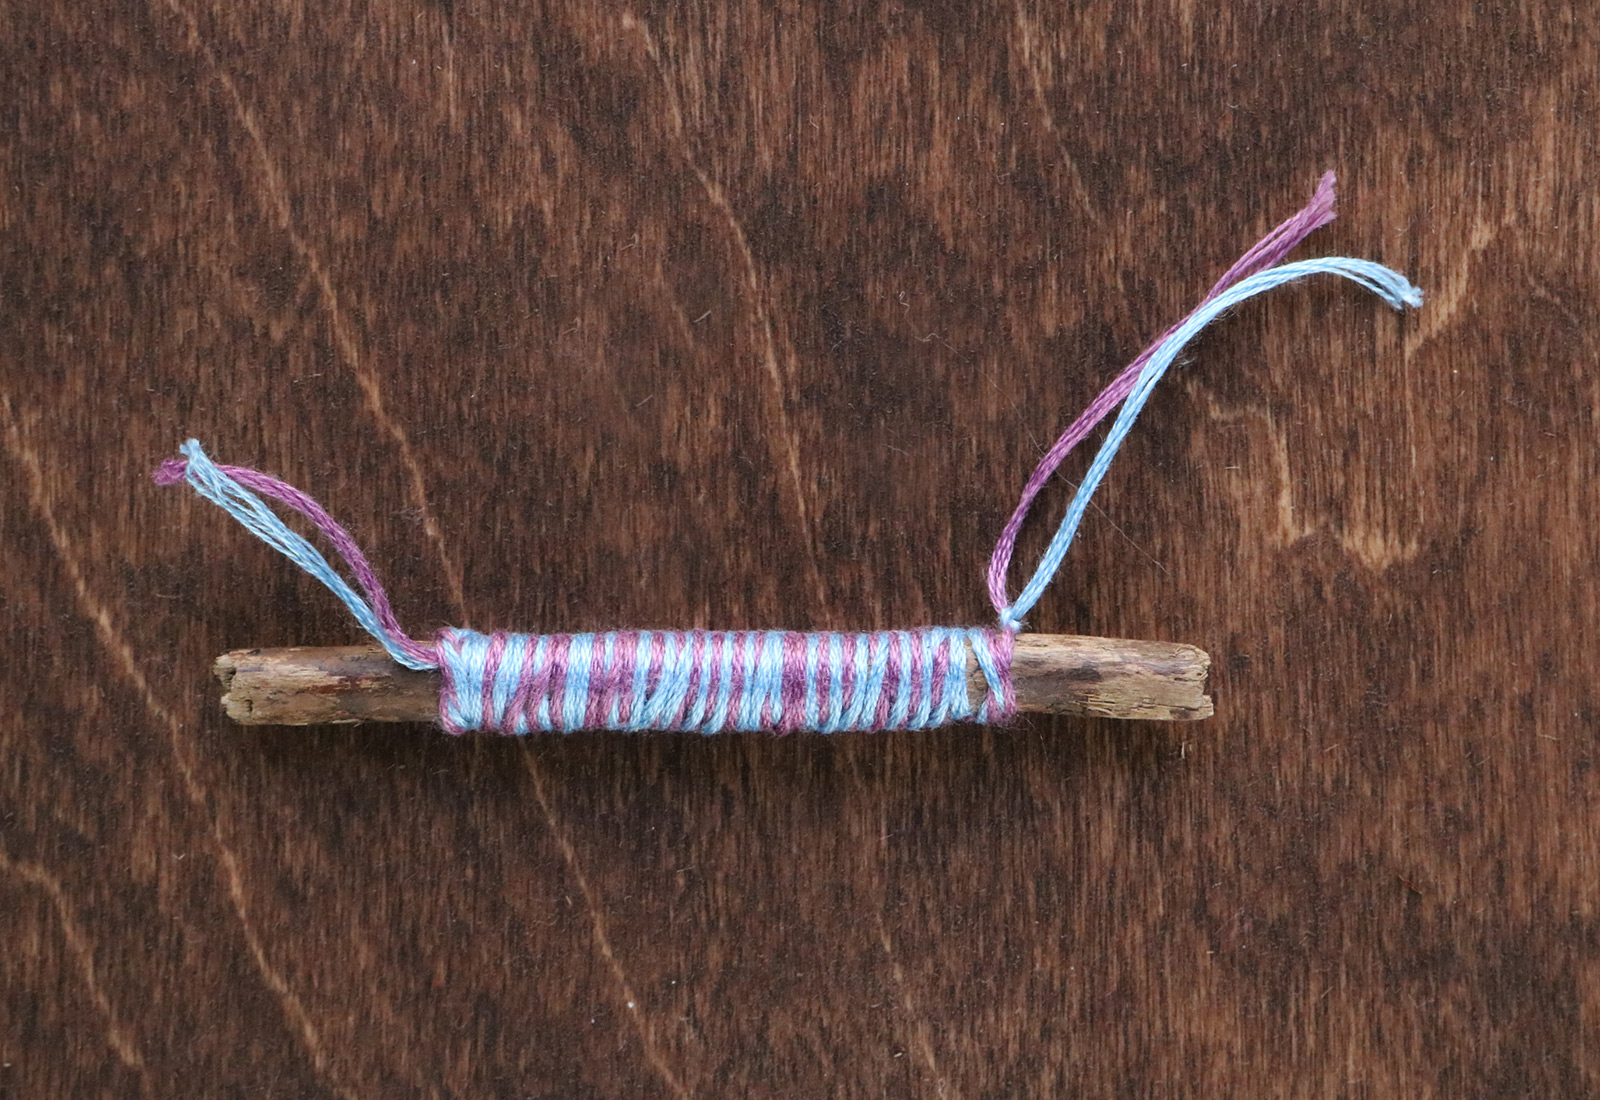 Twig Monogram Necklace DIY